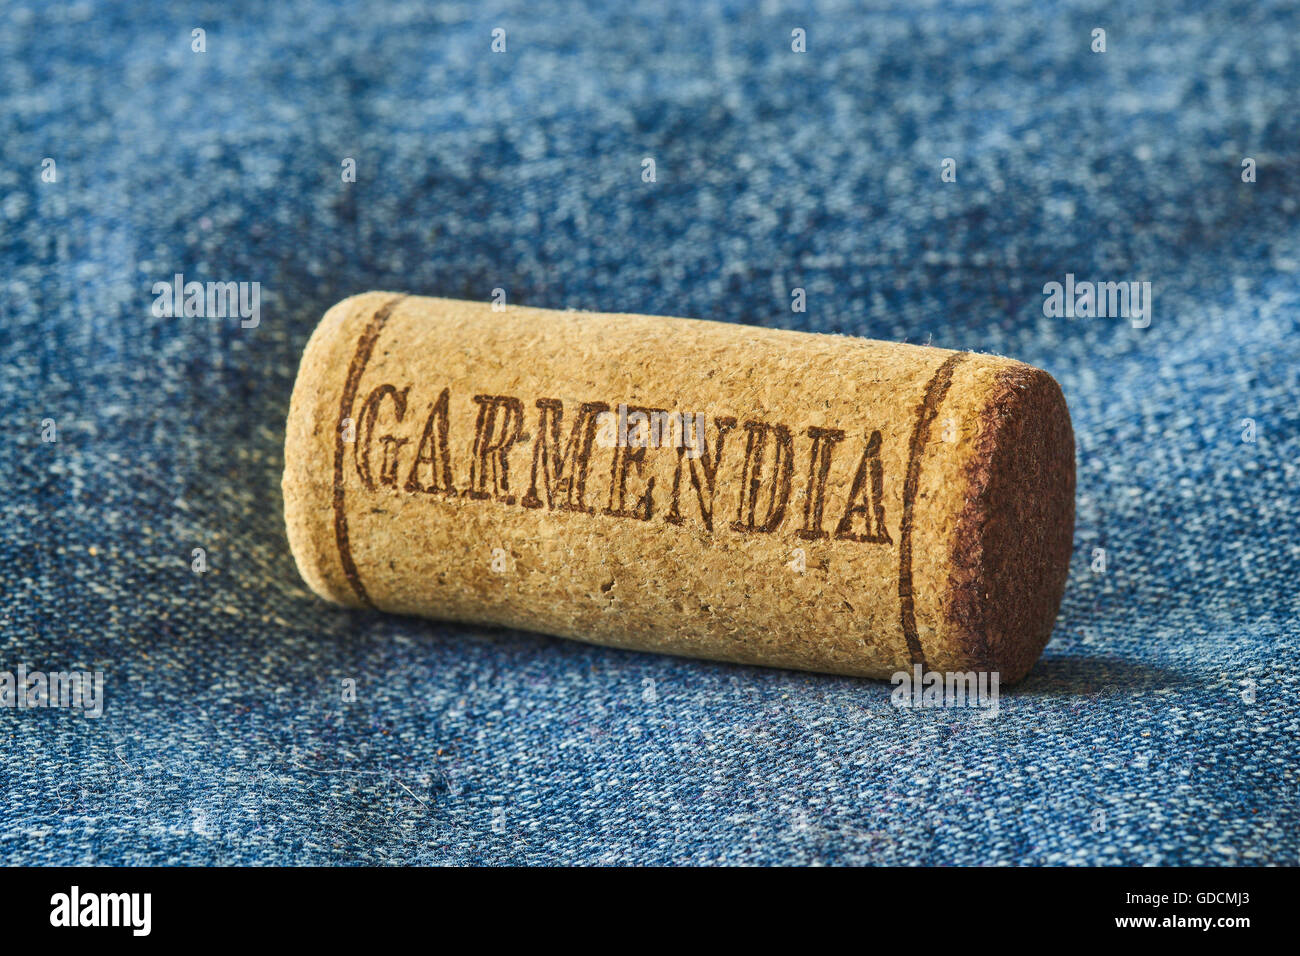 Garmendia organic spanish wine cork stopper Stock Photo